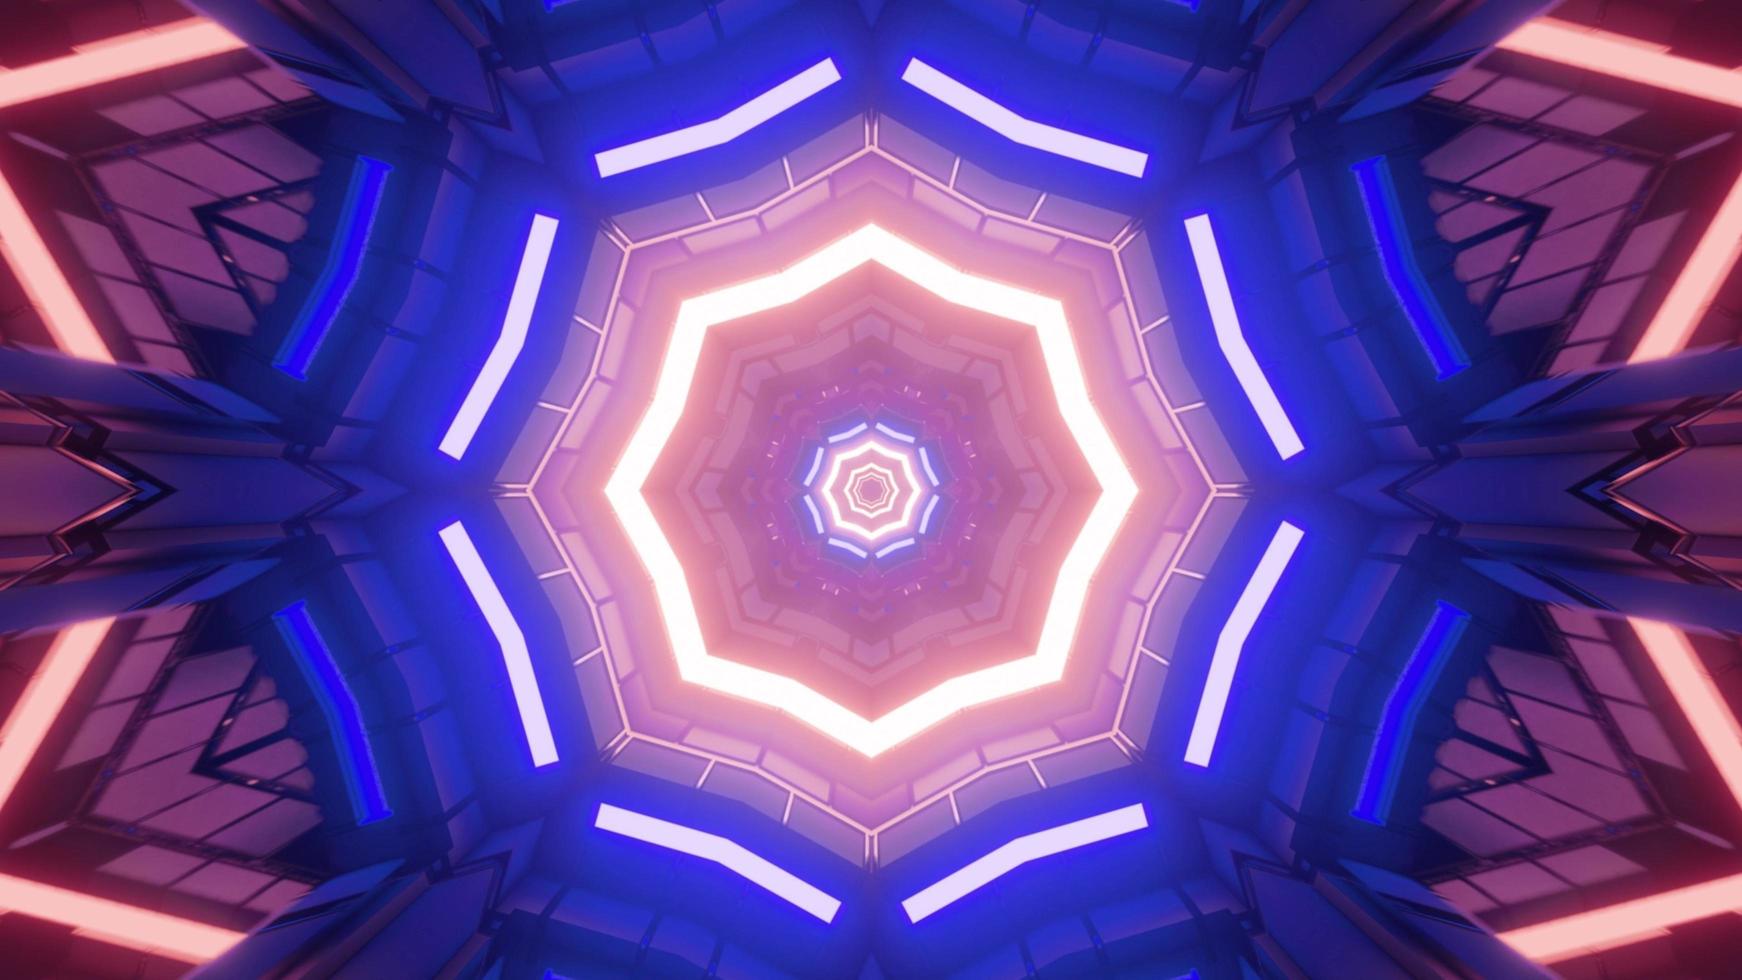 3D-Illustration der Neonbeleuchtung im Cyberspace als abstrakter Hintergrund foto